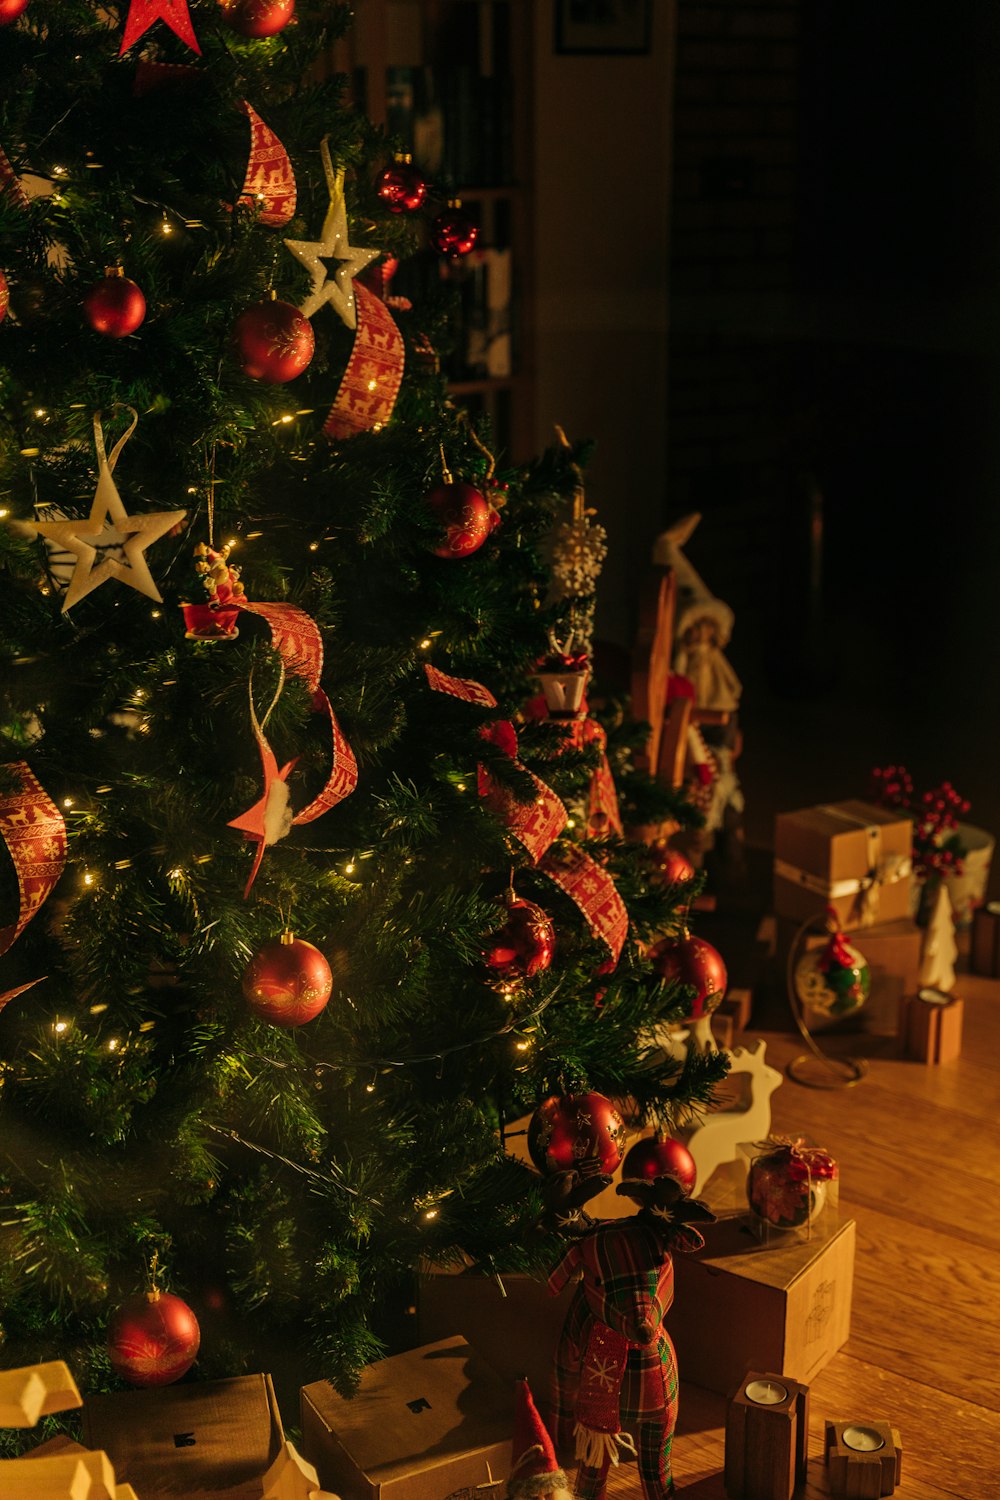 크리스마스 트리는 빨간색과 금색 장식품으로 장식되어 있습니다